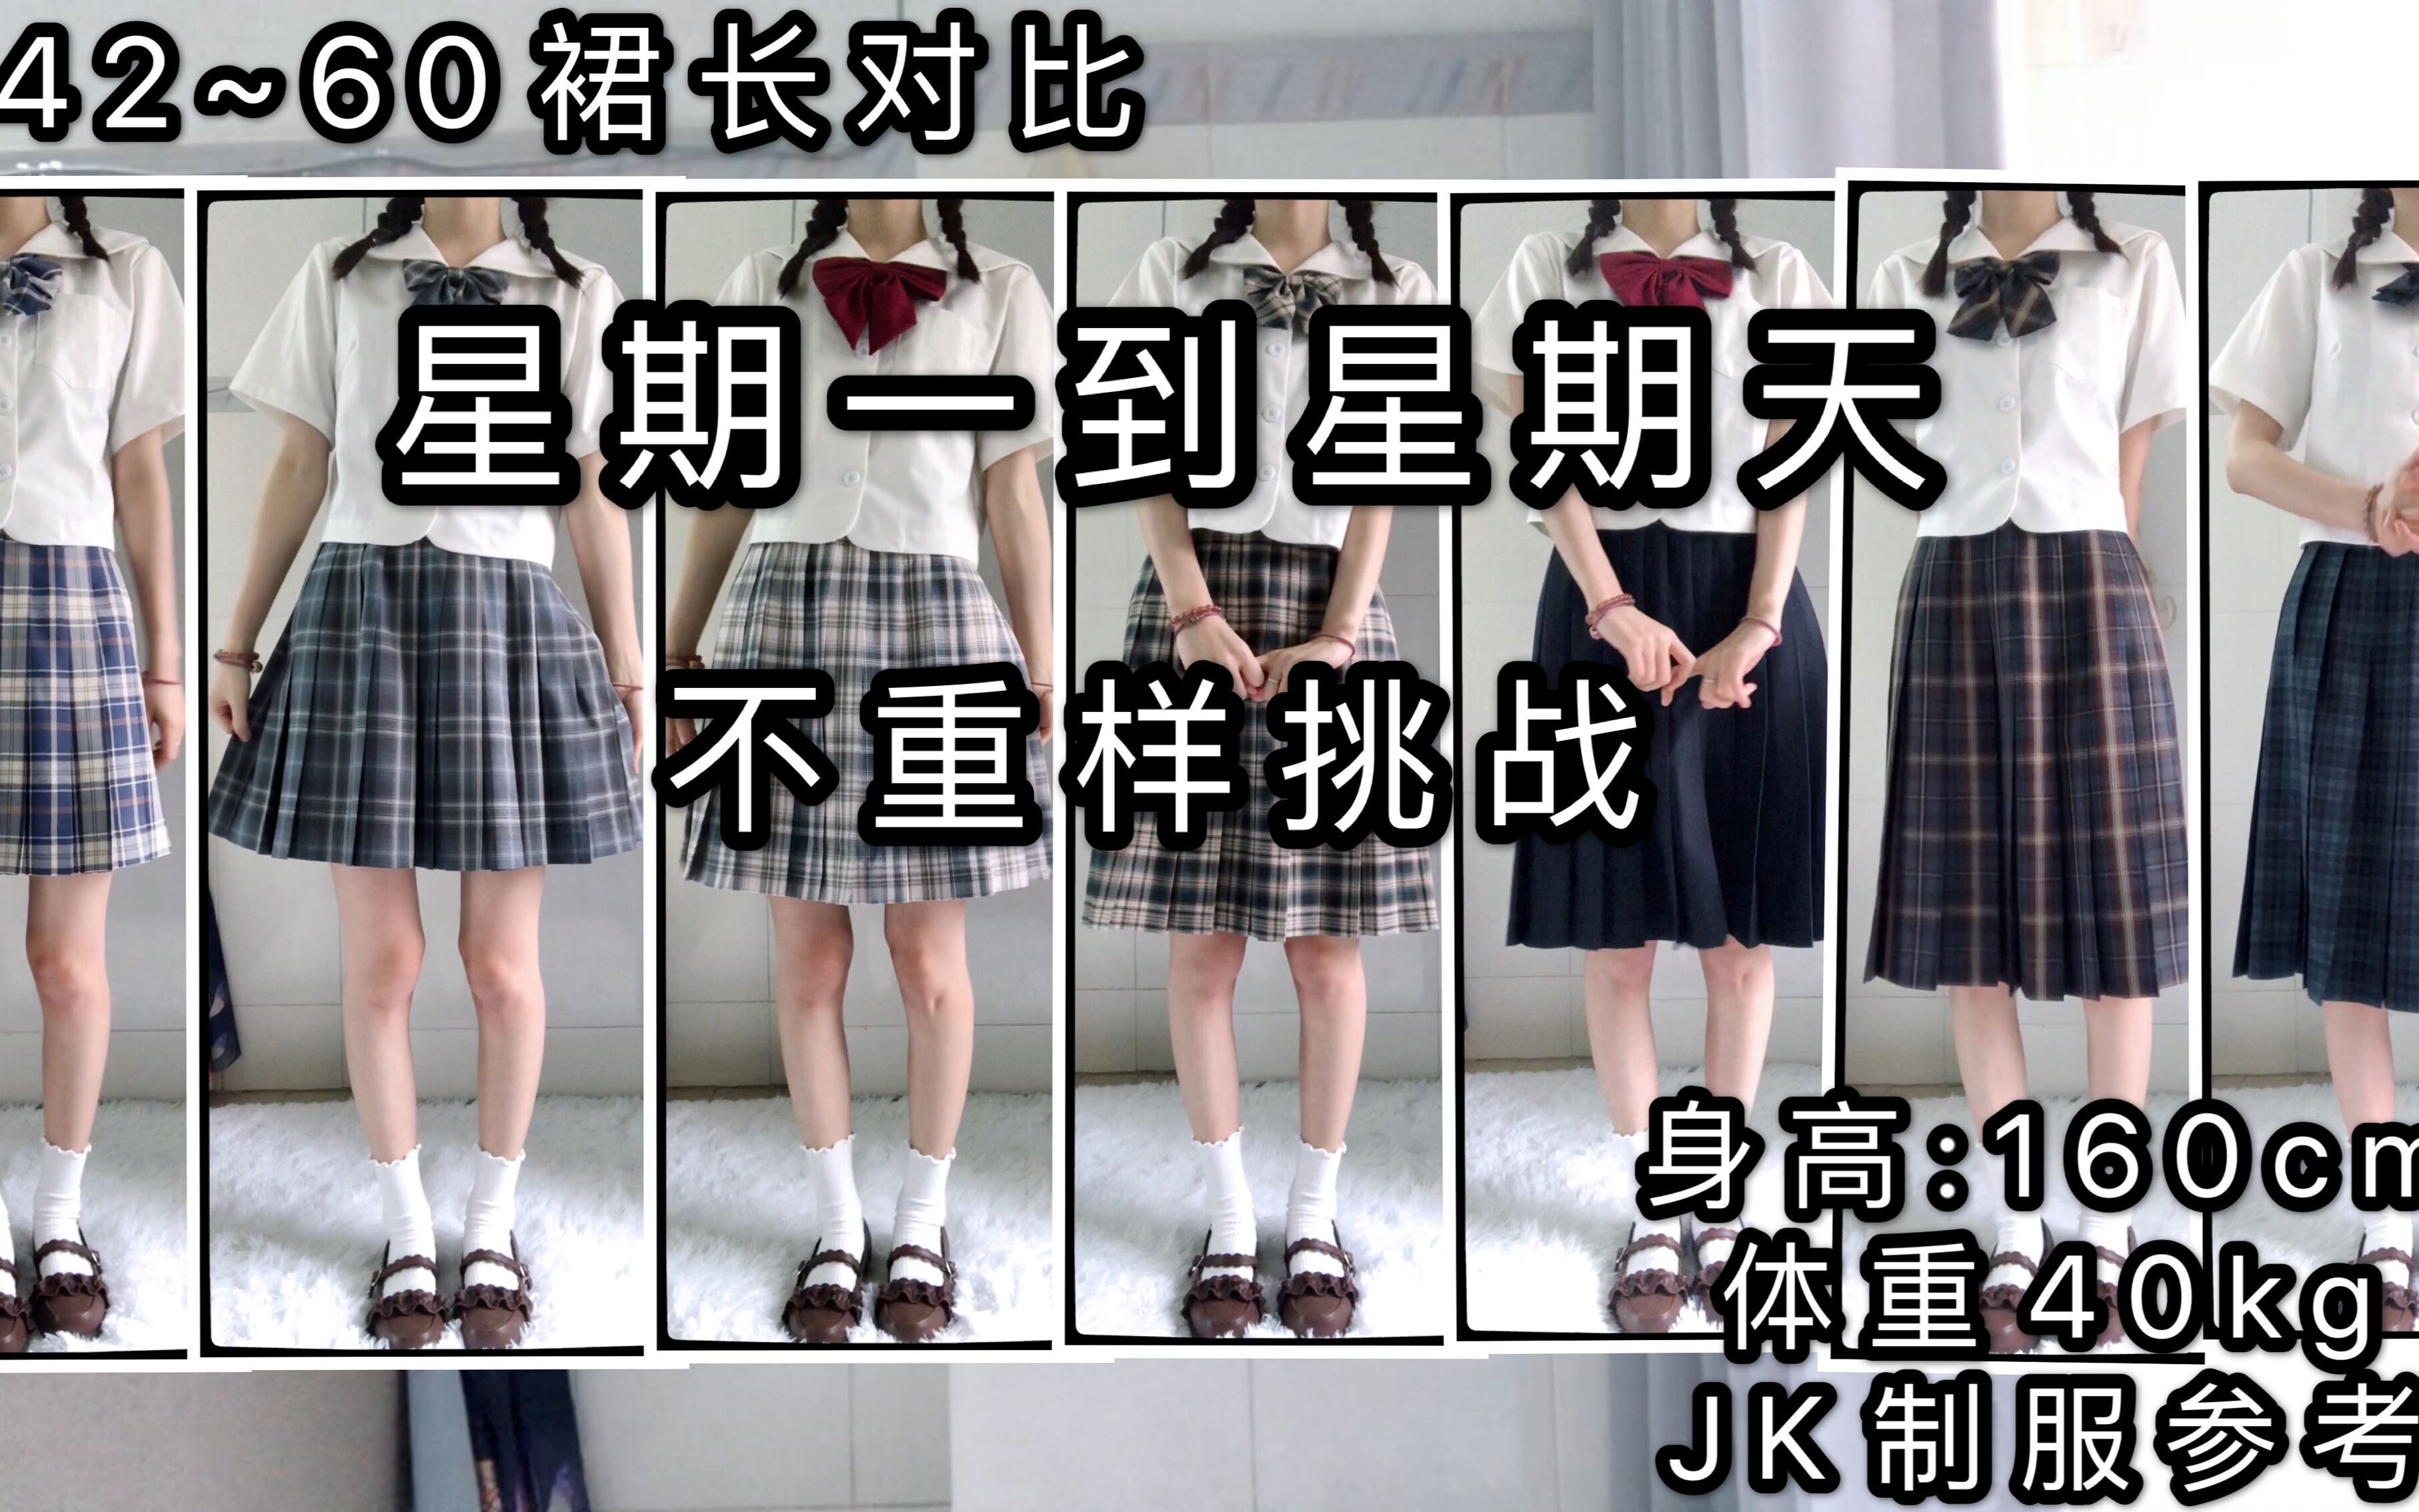 【小恋恋ii】JK制服丨160CM如何选择裙长丨不同裙长参考对比丨如何挑选适合自己的裙长丨裙长究竟怎么选